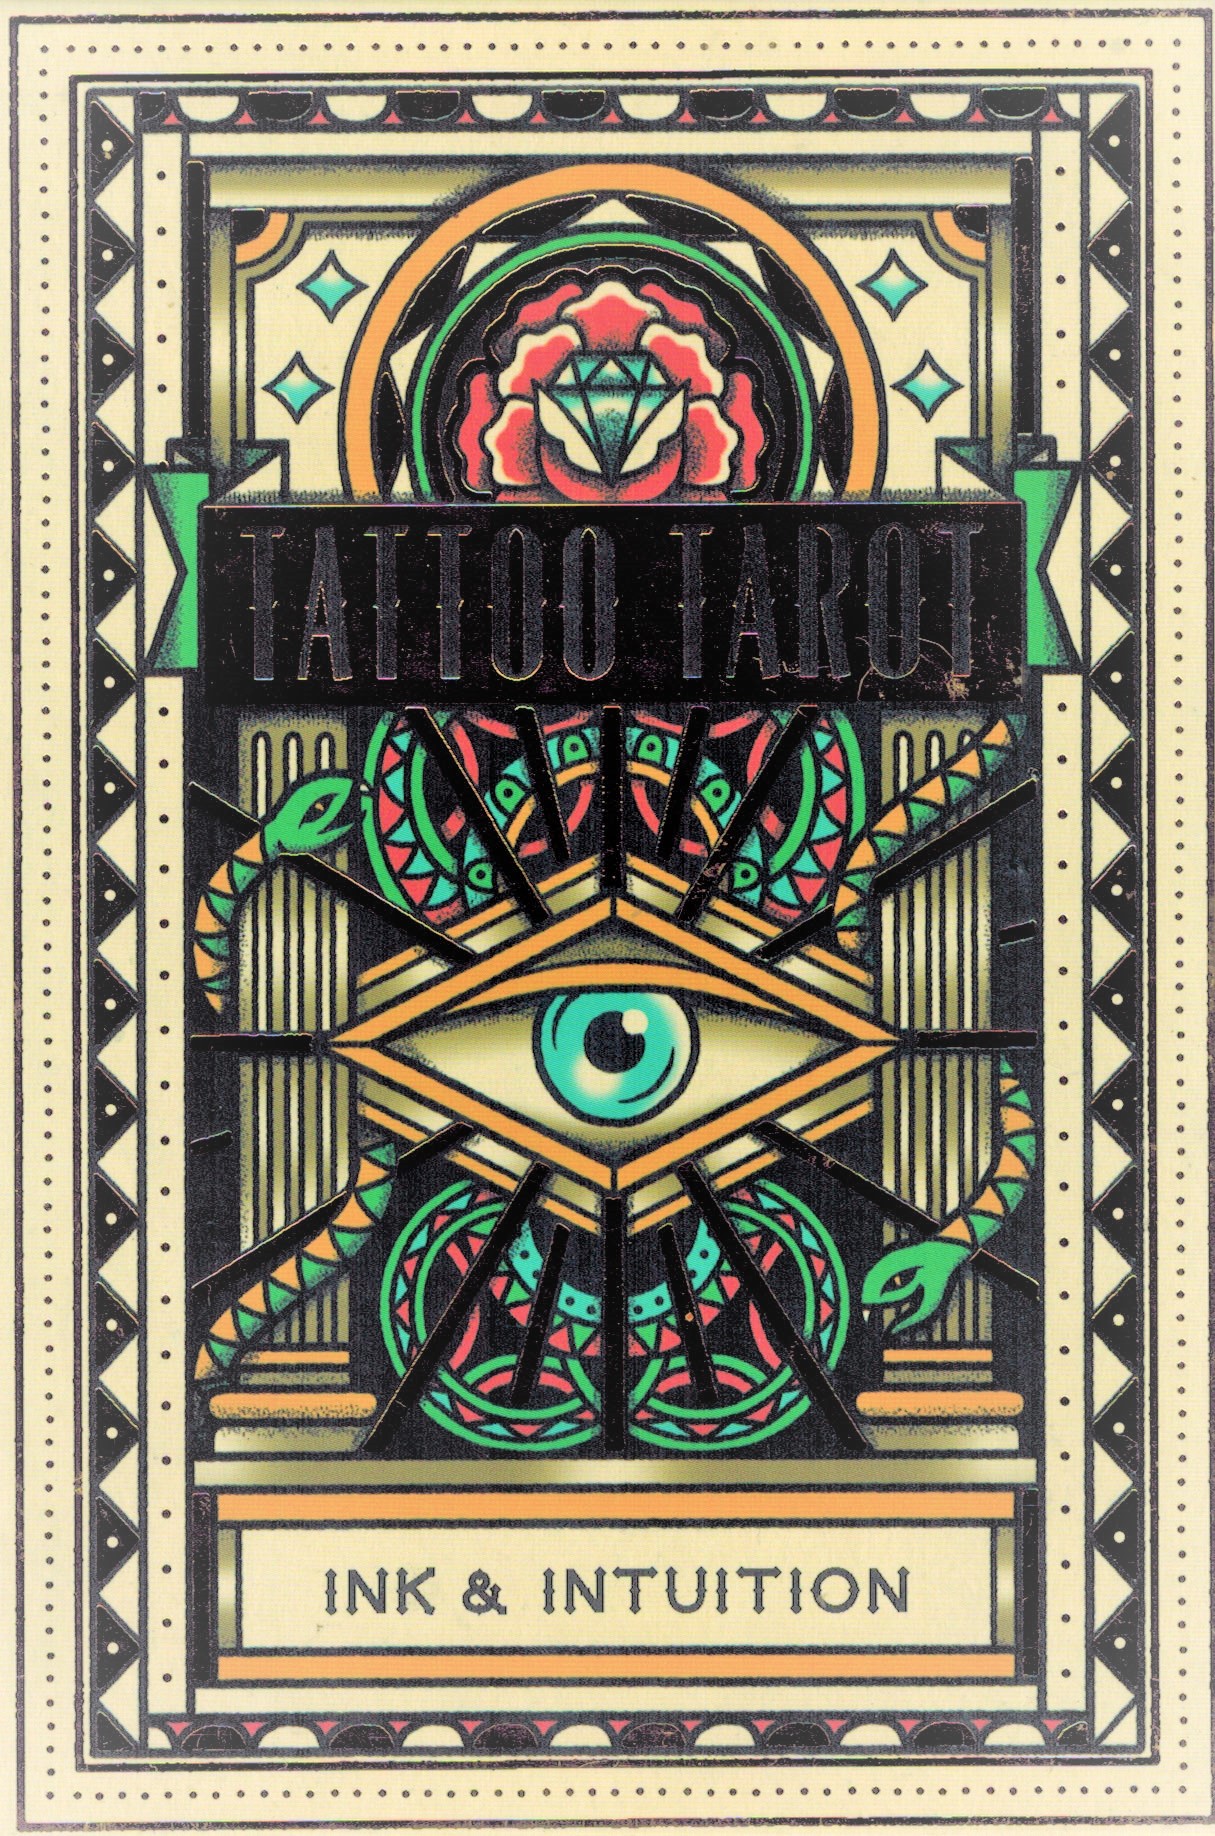 Mua Bộ Tarot Tattoo Tarot Ink & Intuition Bài Bói New | Tiki